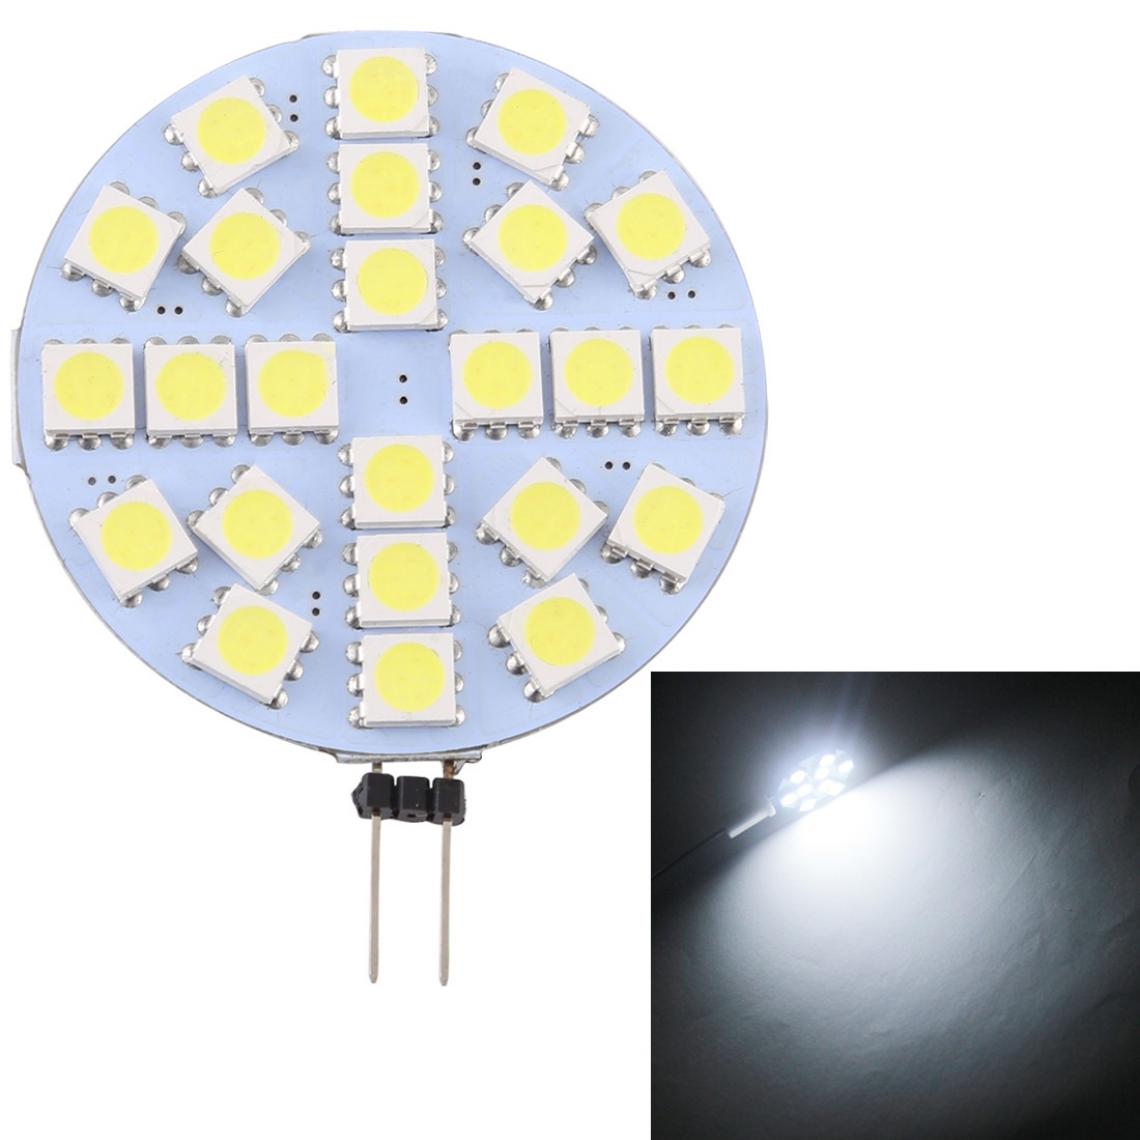 Wewoo - G4 24 LED SMD 5050 288LM 6000-6500K Ampoule de lampe de base à broche à économie d'énergie à intensité variableDC 12V lumière blanche - Ampoules LED